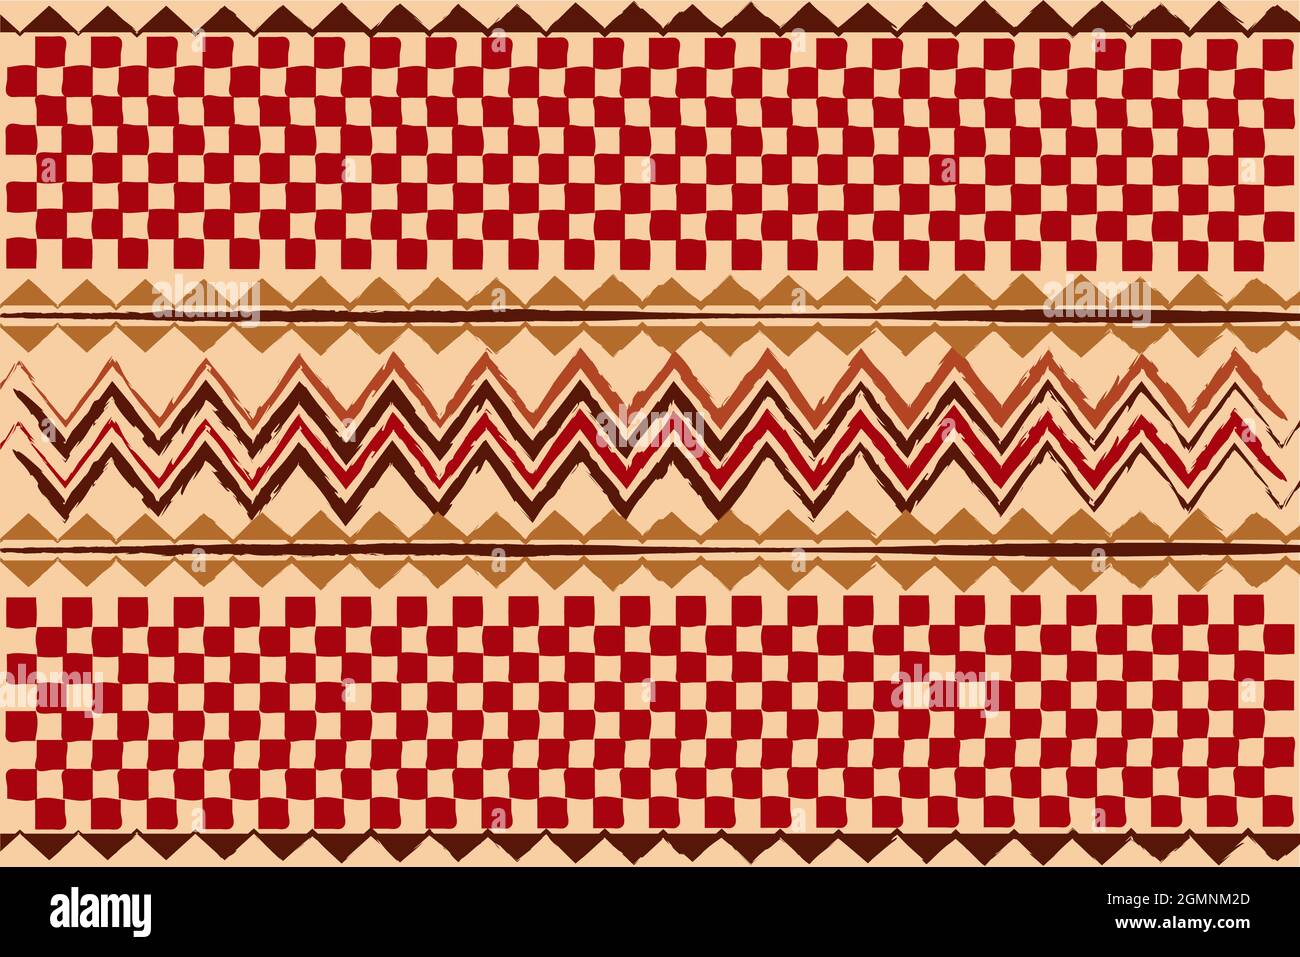 afrikanische traditionelle Wandbehänge, ethnische Muster, bedruckter Stoff Textil, handgefertigte geometrische Motive aus Stammes. Simbabwe Kunsthandwerk Vektor Illustration Afro Stock Vektor